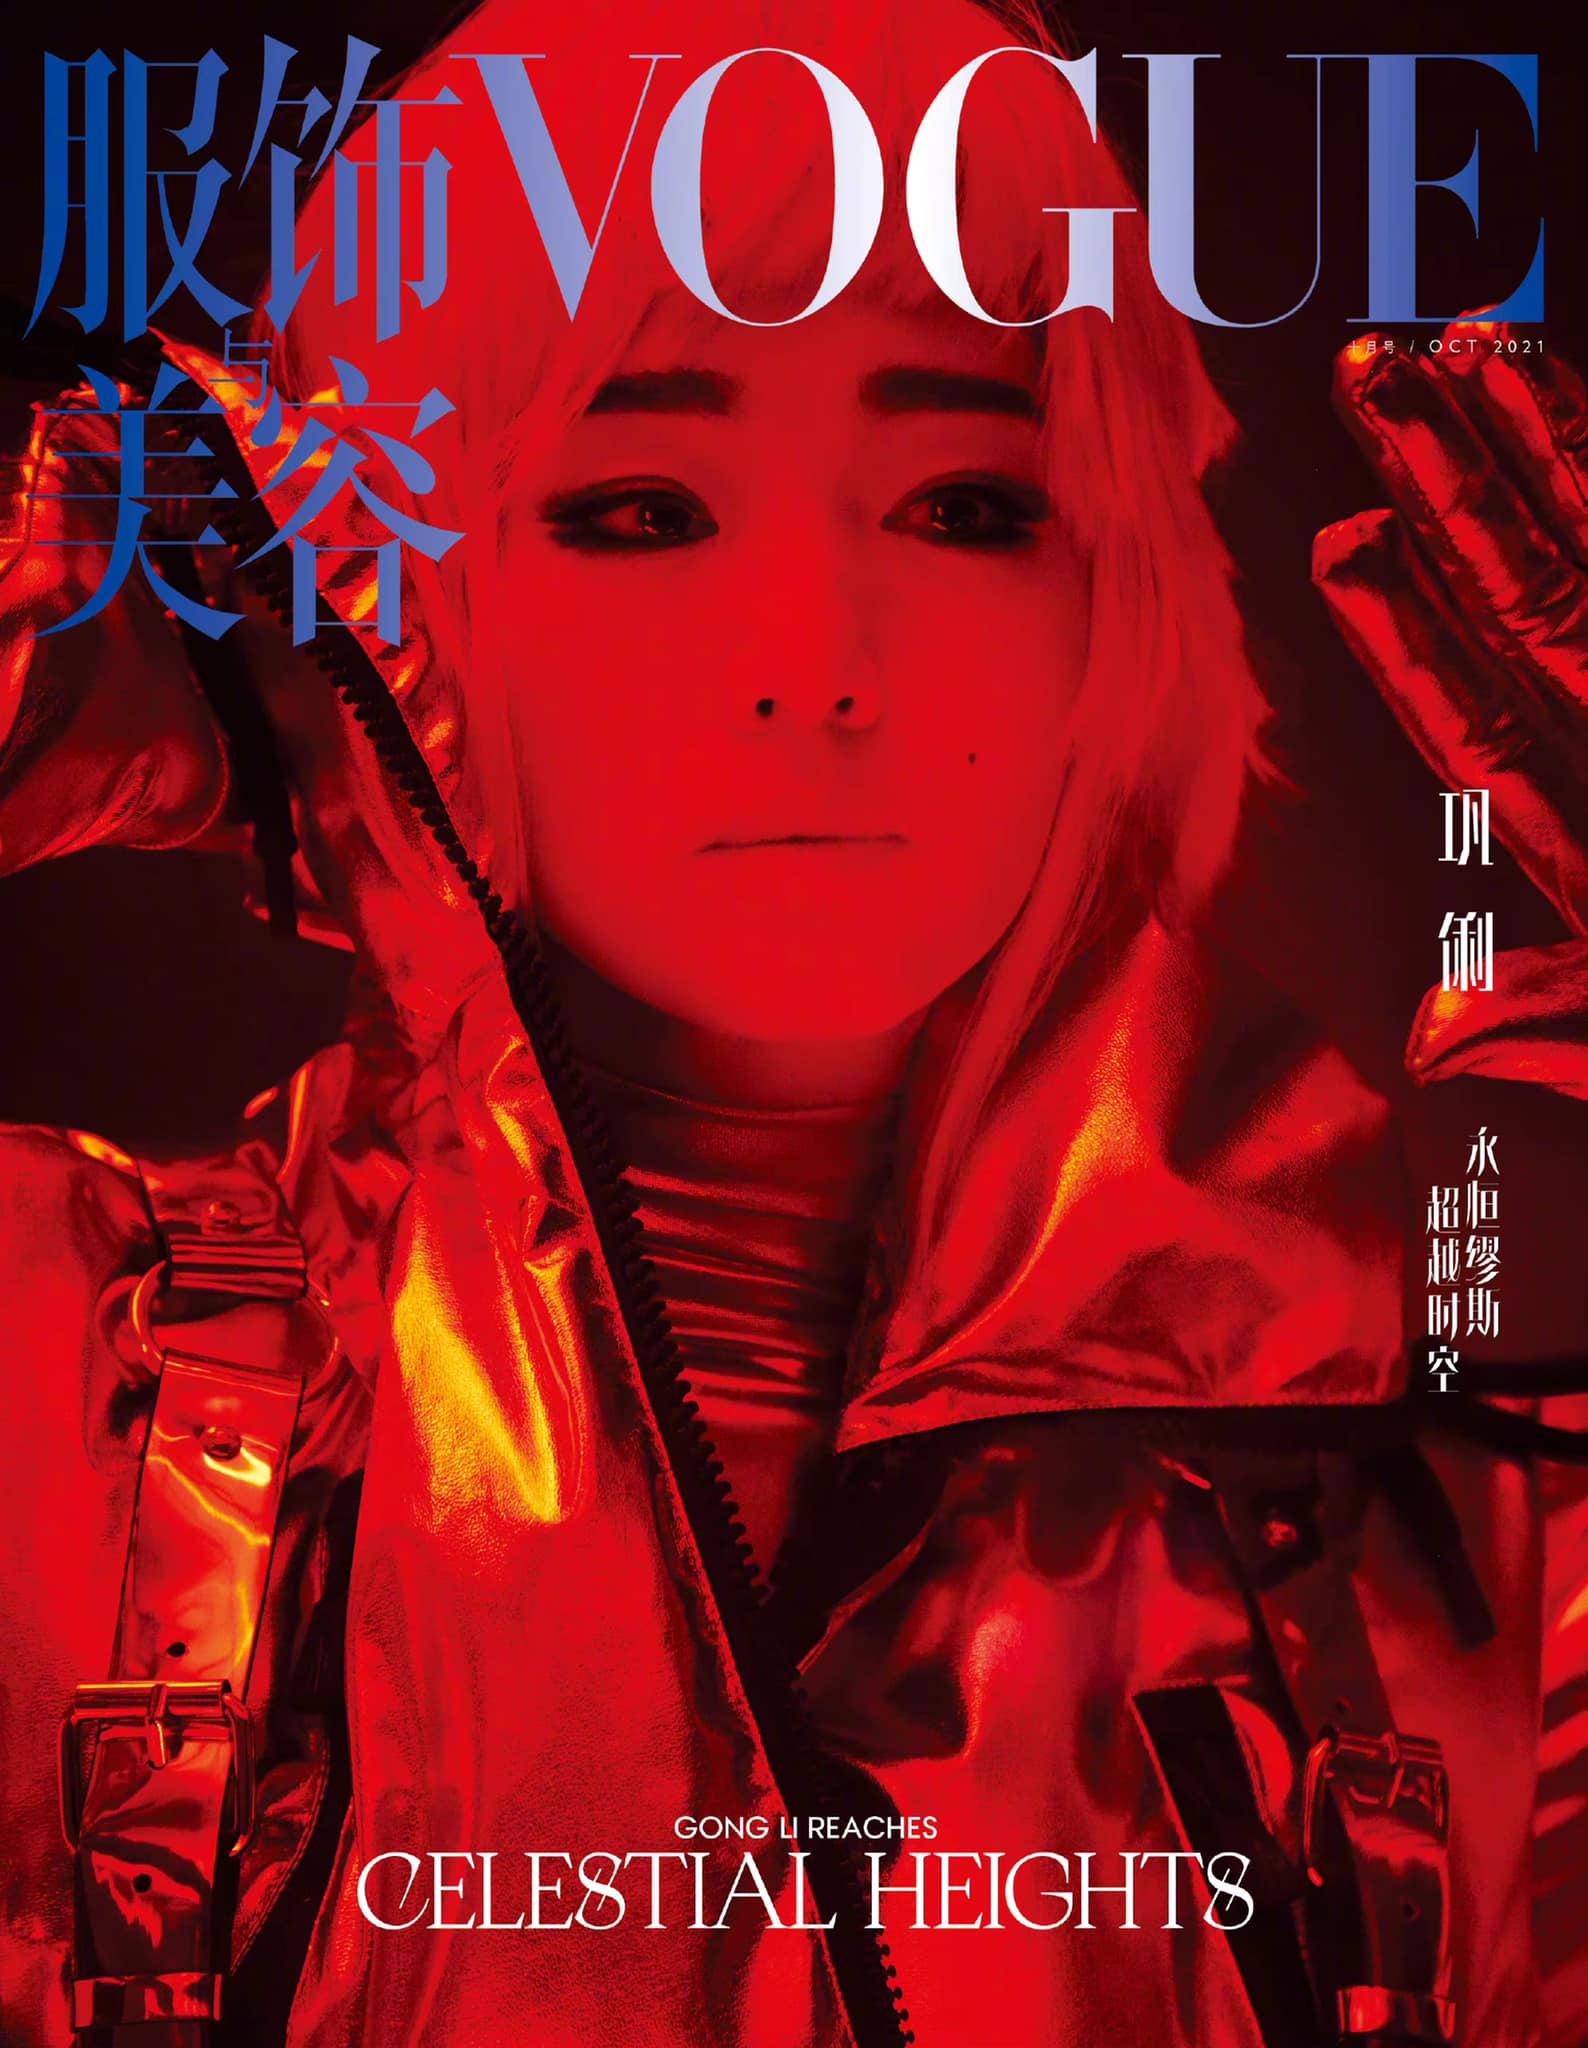 Trang bìa mới nhất của Vogue được lấy cảm hứng từ bộ phim huyền thoạt 2001: A Space Odyssey của đạo diện Stanley Kubrick.